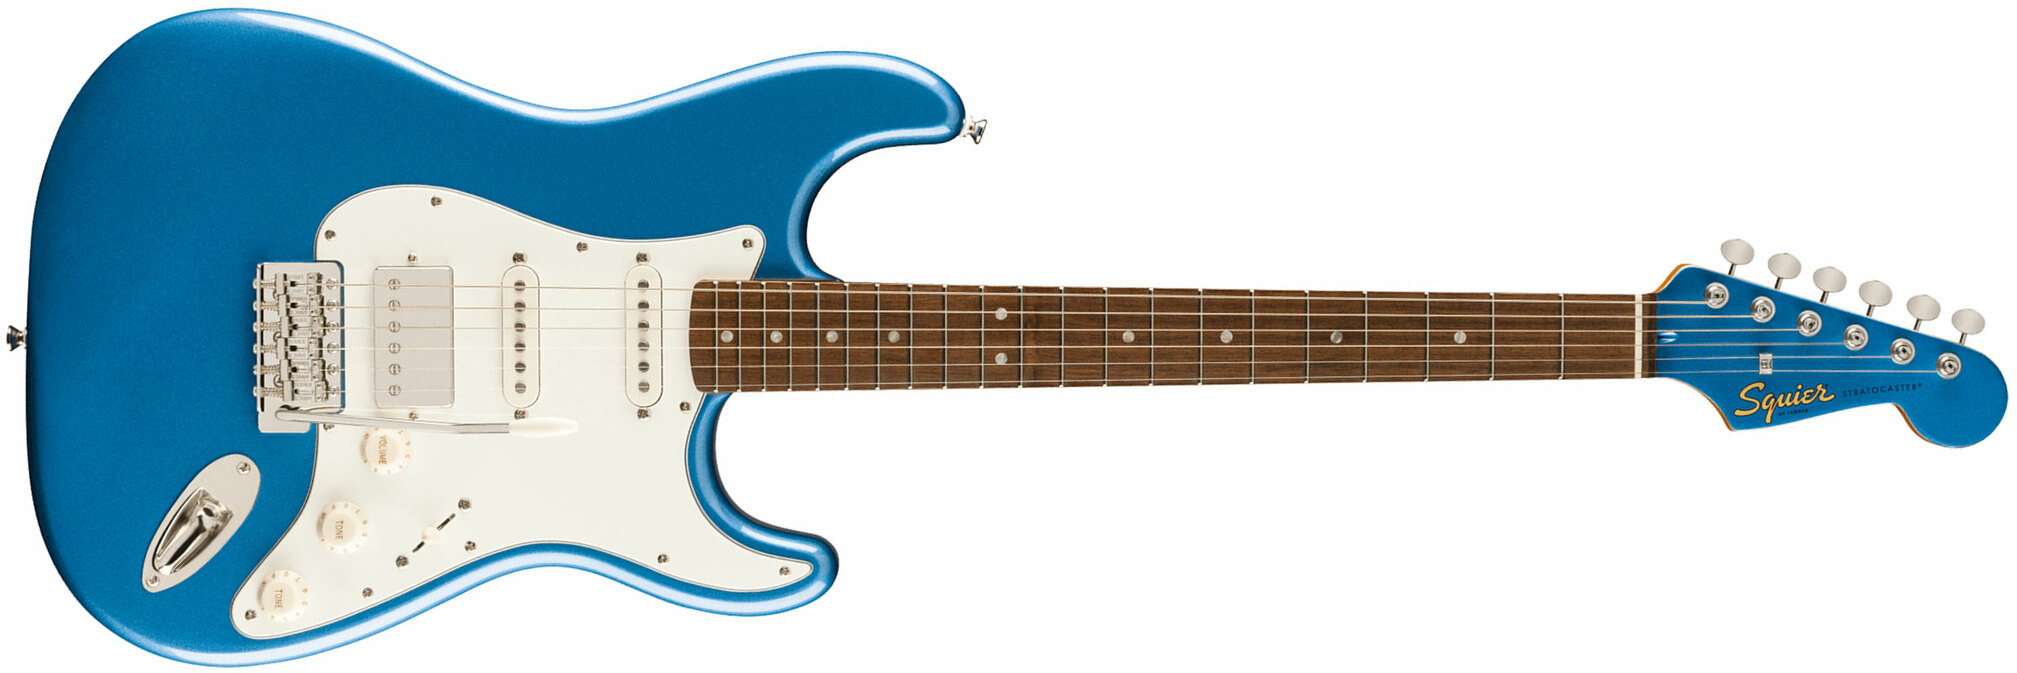 Squier Strat 60s Classic Vibe Ltd Hss Trem Lau - Lake Placid Blue - Retro-rock elektrische gitaar - Main picture